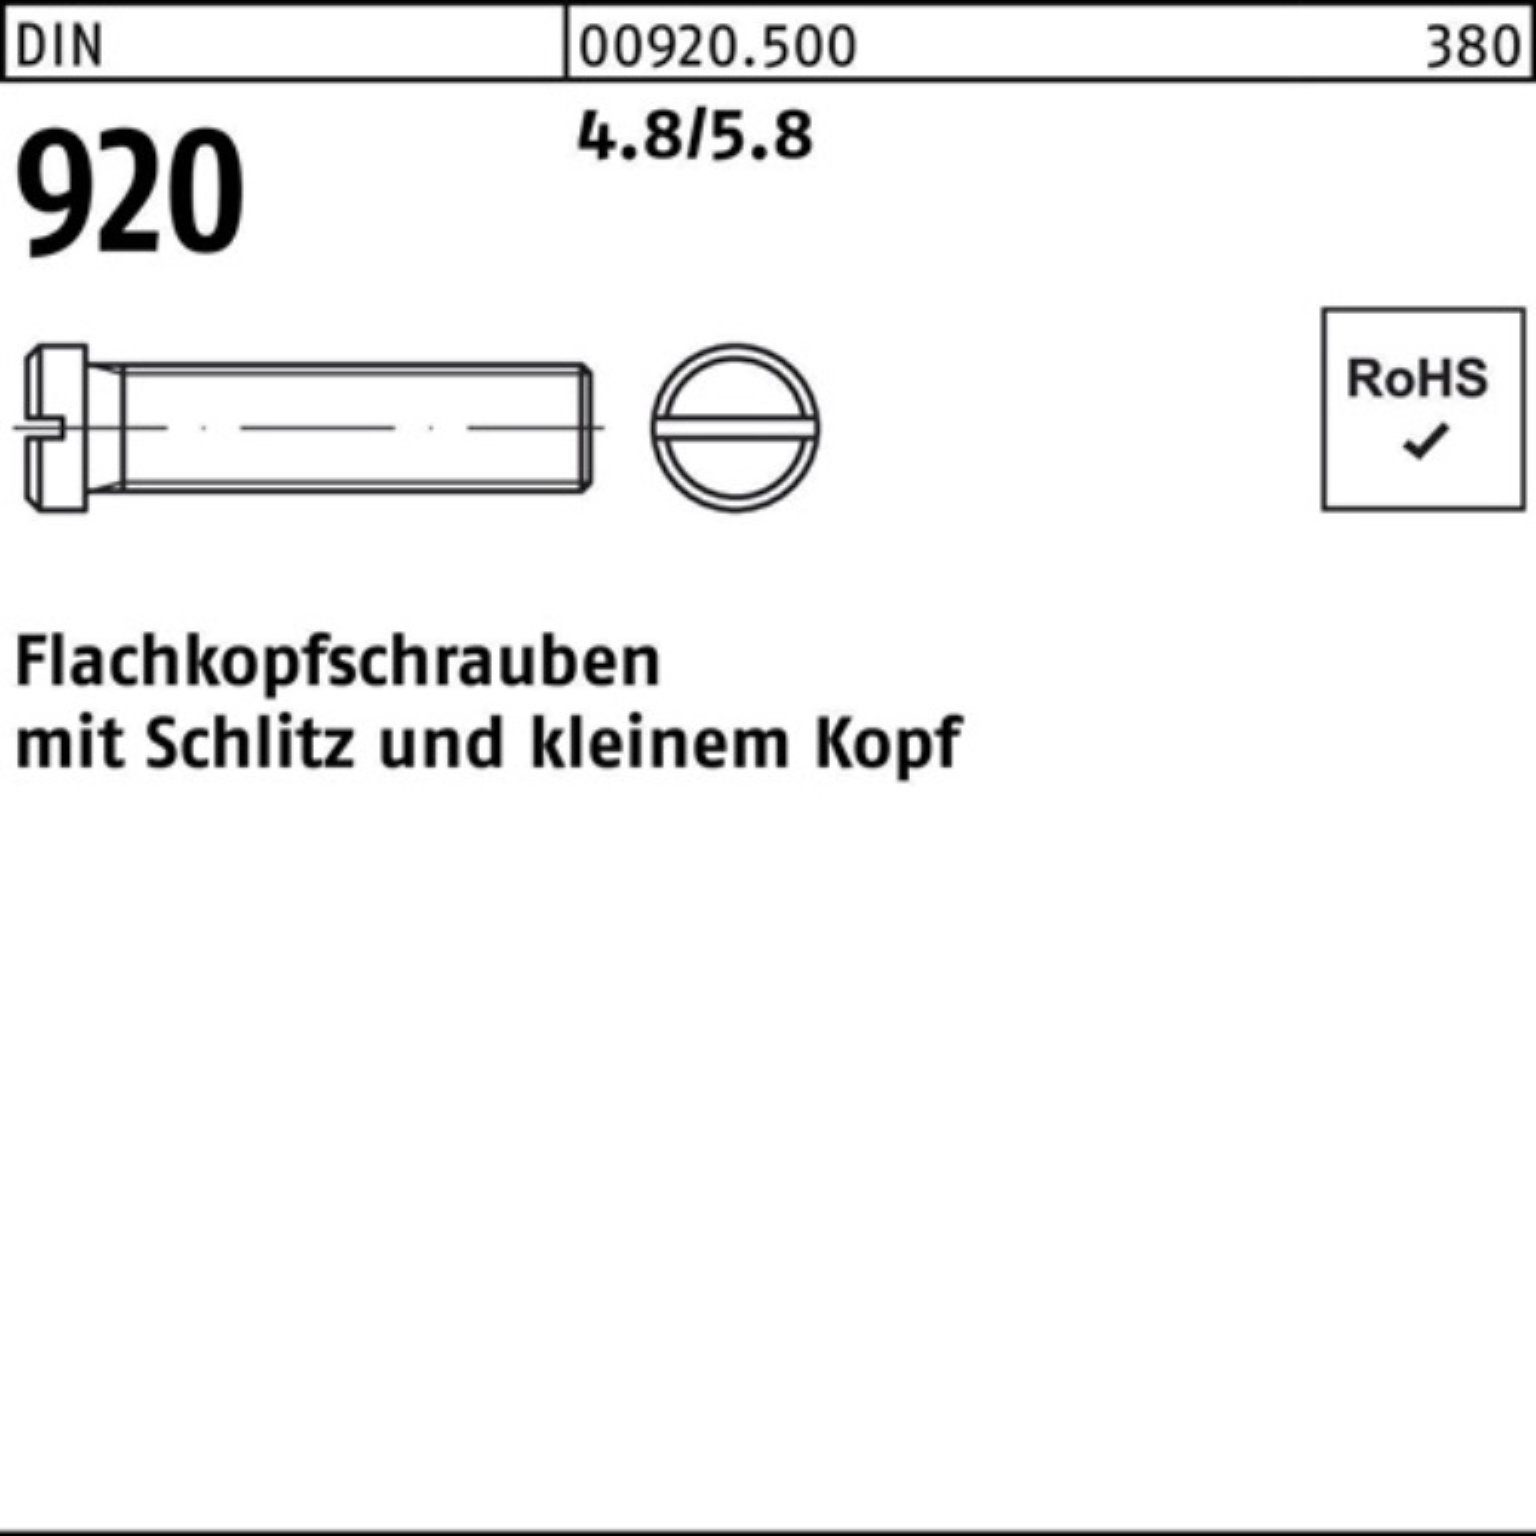 Reyher Schraube 100er Pack Flachkopfschraube DIN 920 Schlitz M5x 25 4.8/5.8 100 Stück